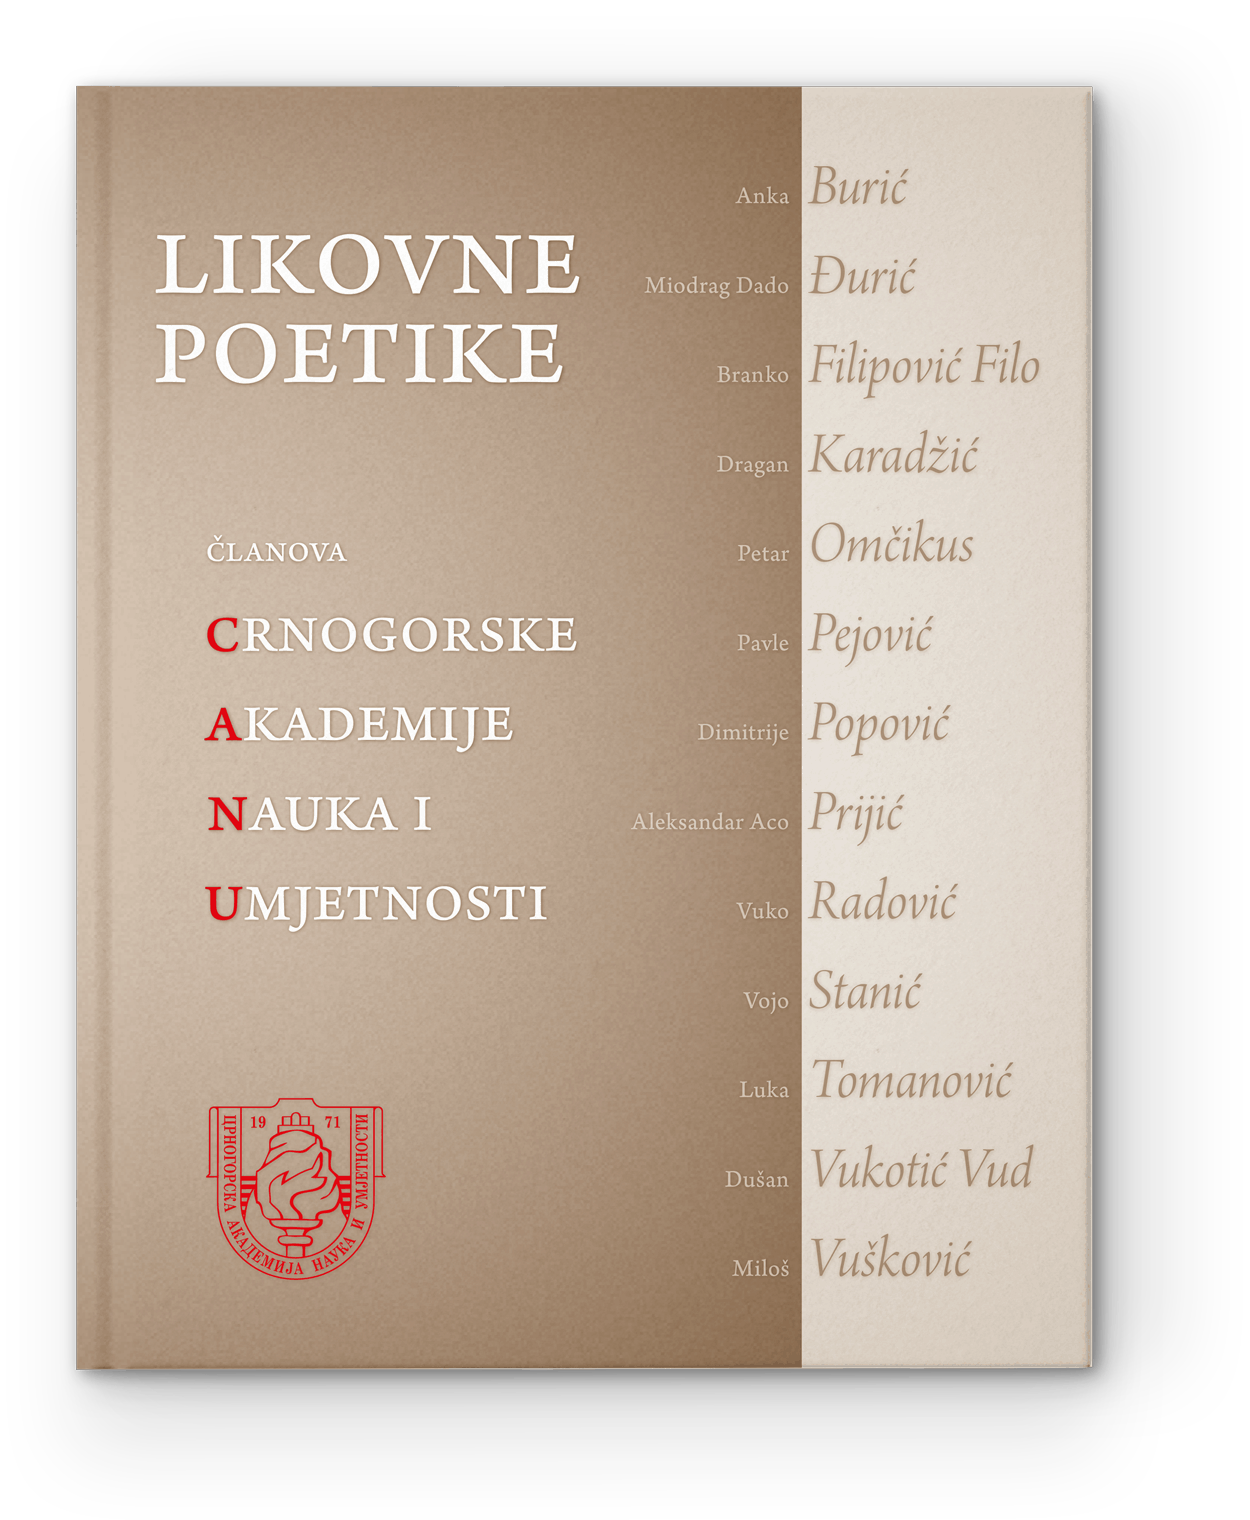 414-Likov-poetike